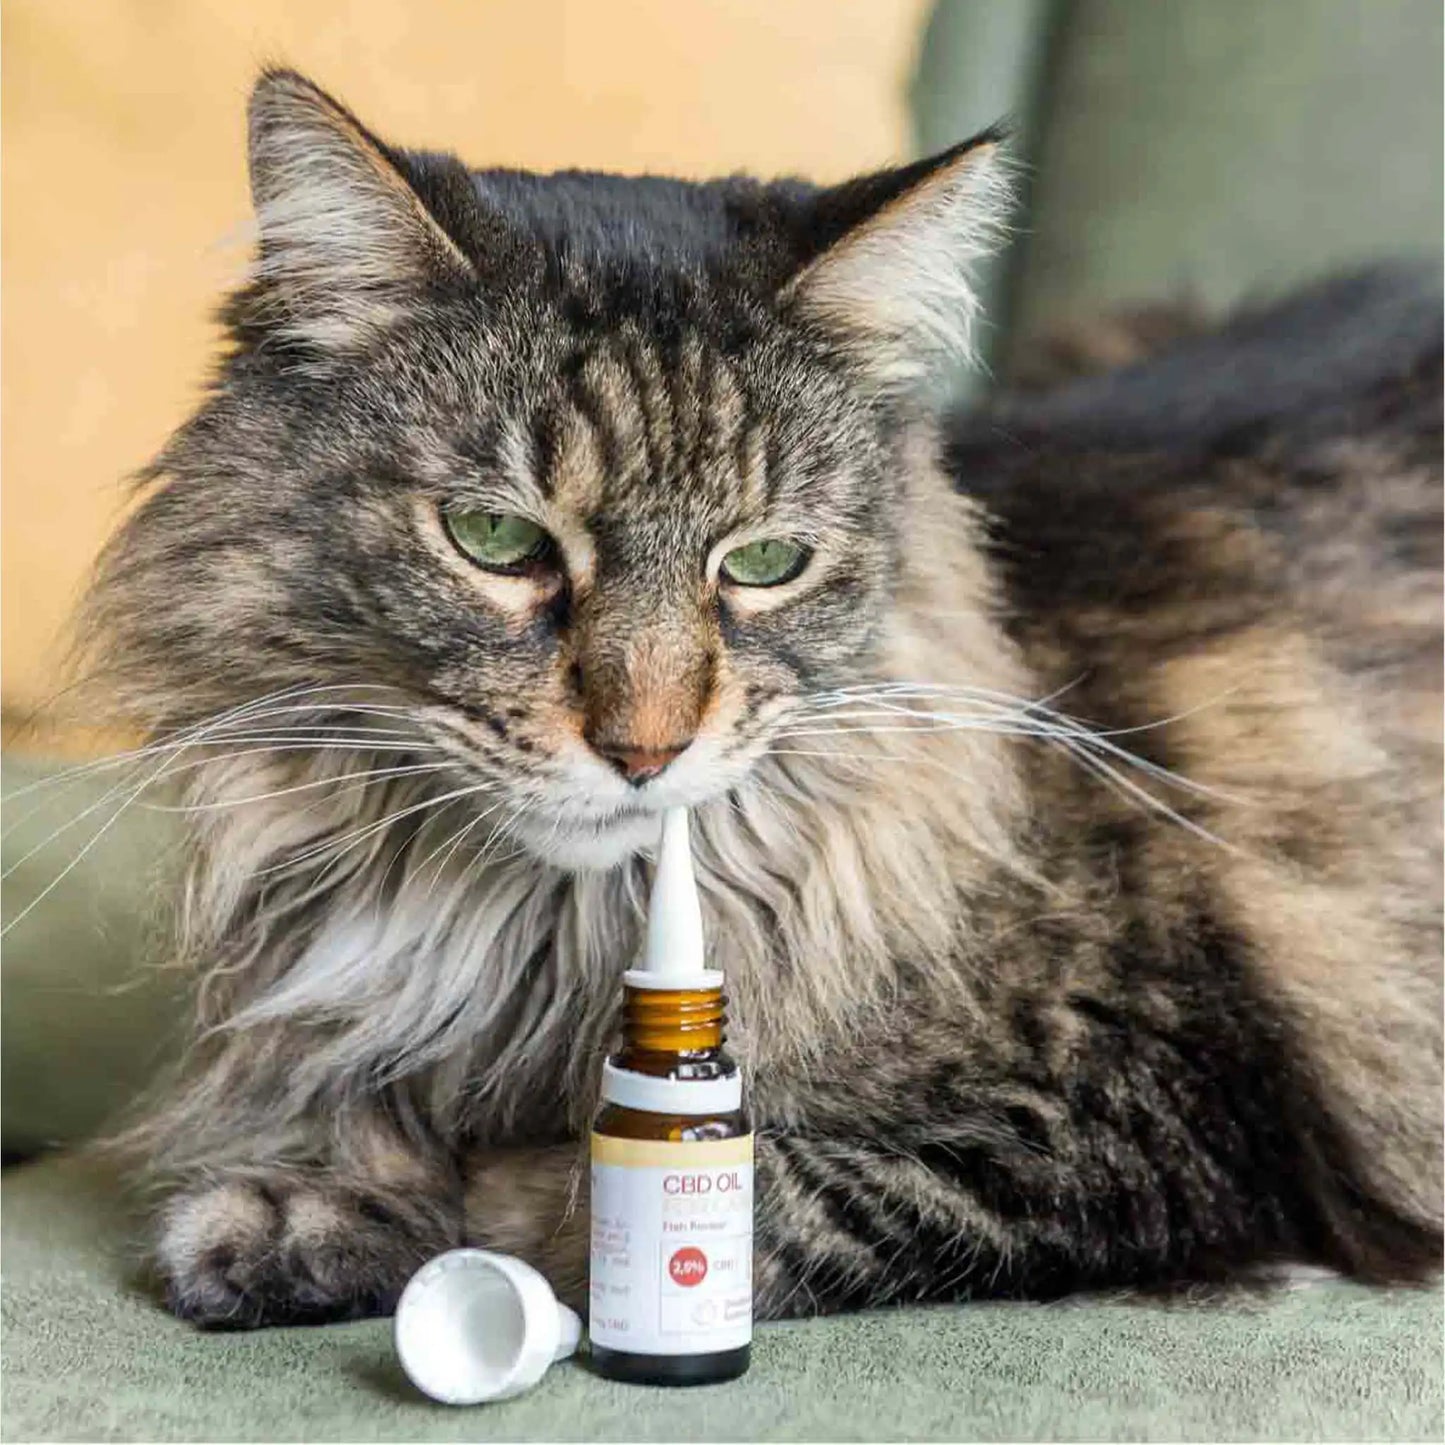 en brun kat lugter til den åbne flaske med CBD-olie